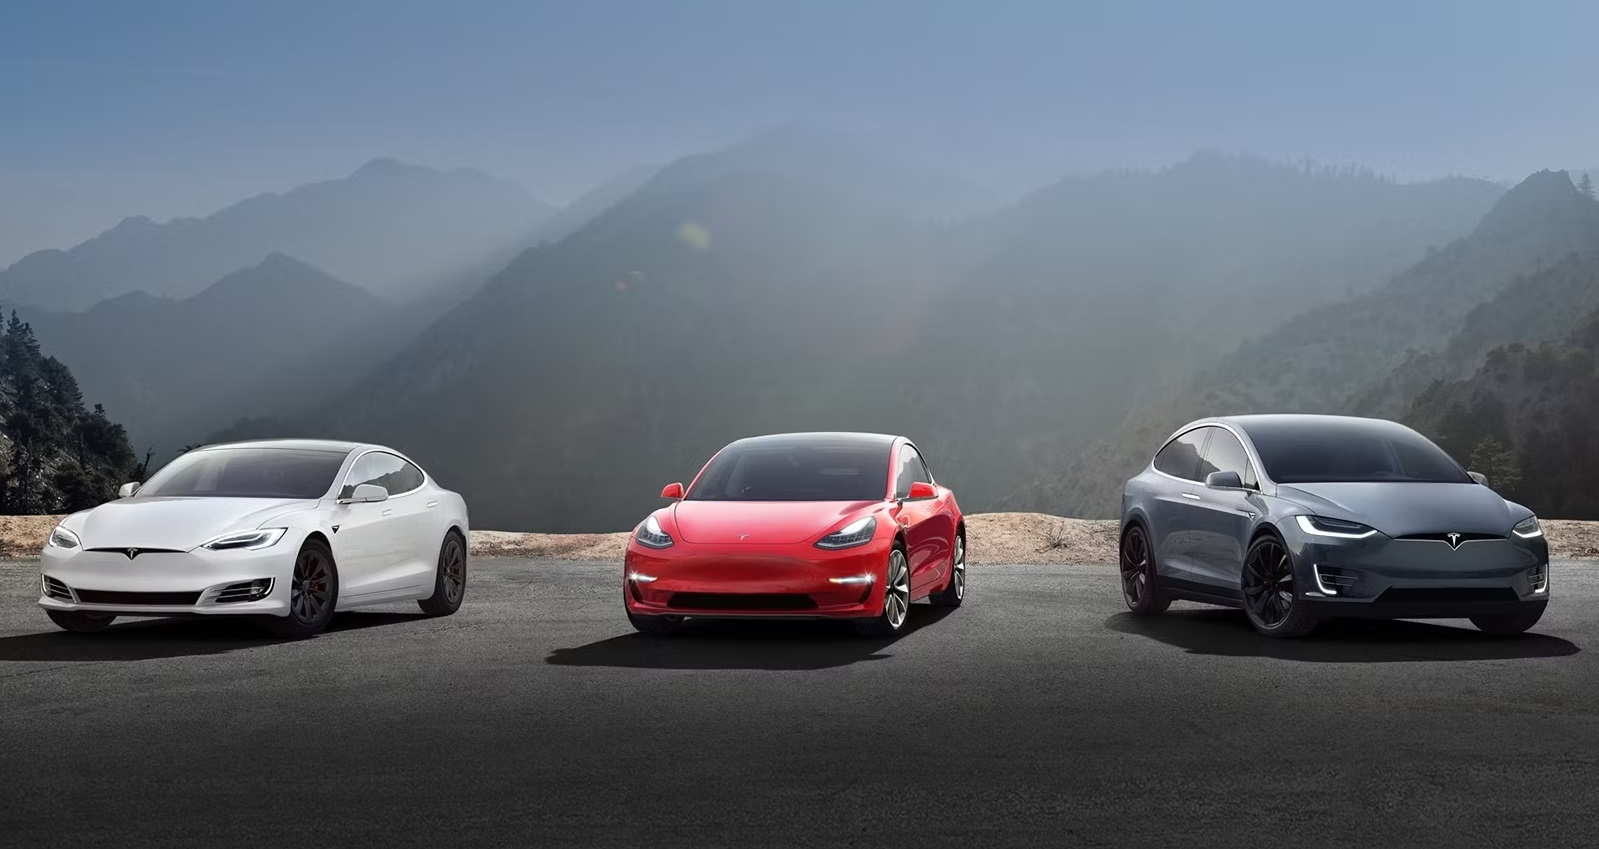 Tesla chce produkować 20 mln samochodów elektrycznych rocznie, ale żeby to zrobić musi zainwestować 175 mld dolarów i zwiększyć zasięg do co najmniej 10 modeli